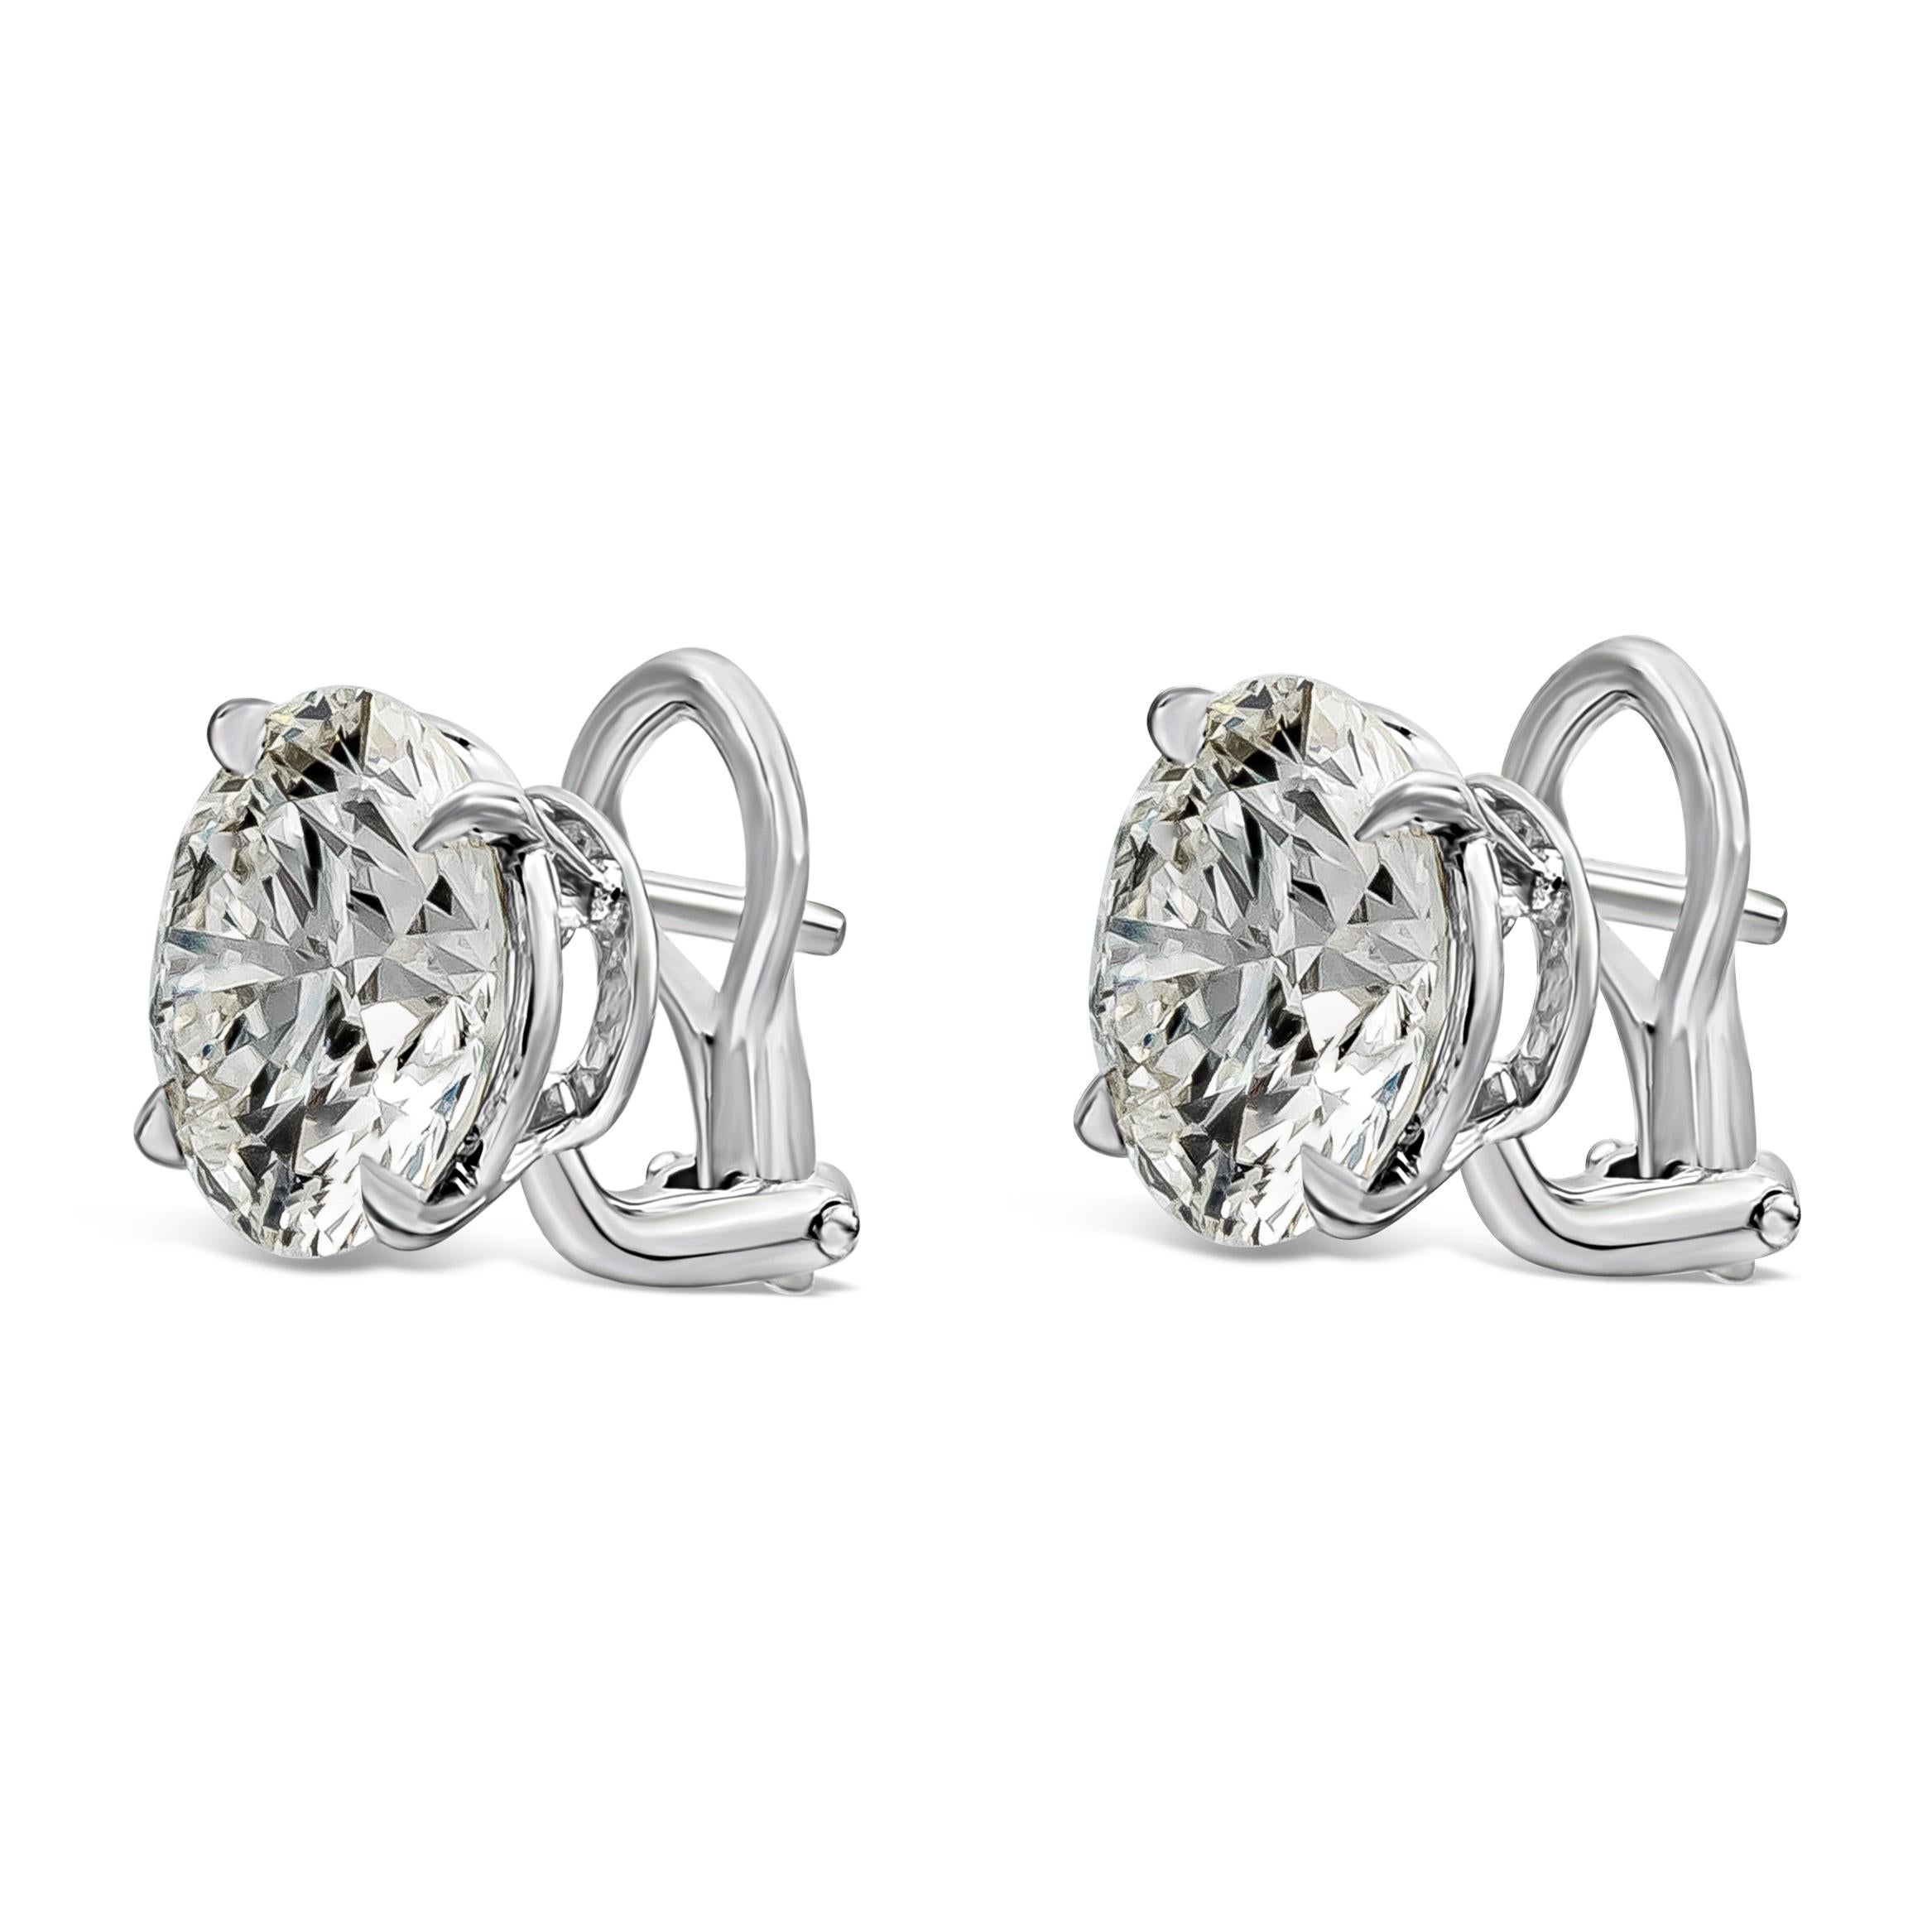 Une paire de boucles d'oreilles classiques mettant en valeur deux diamants ronds brillants certifiés HRD pesant 11,46 carats au total, des diamants parfaitement assortis de couleur I et de pureté VS1. Serti dans un simple panier en platine à quatre